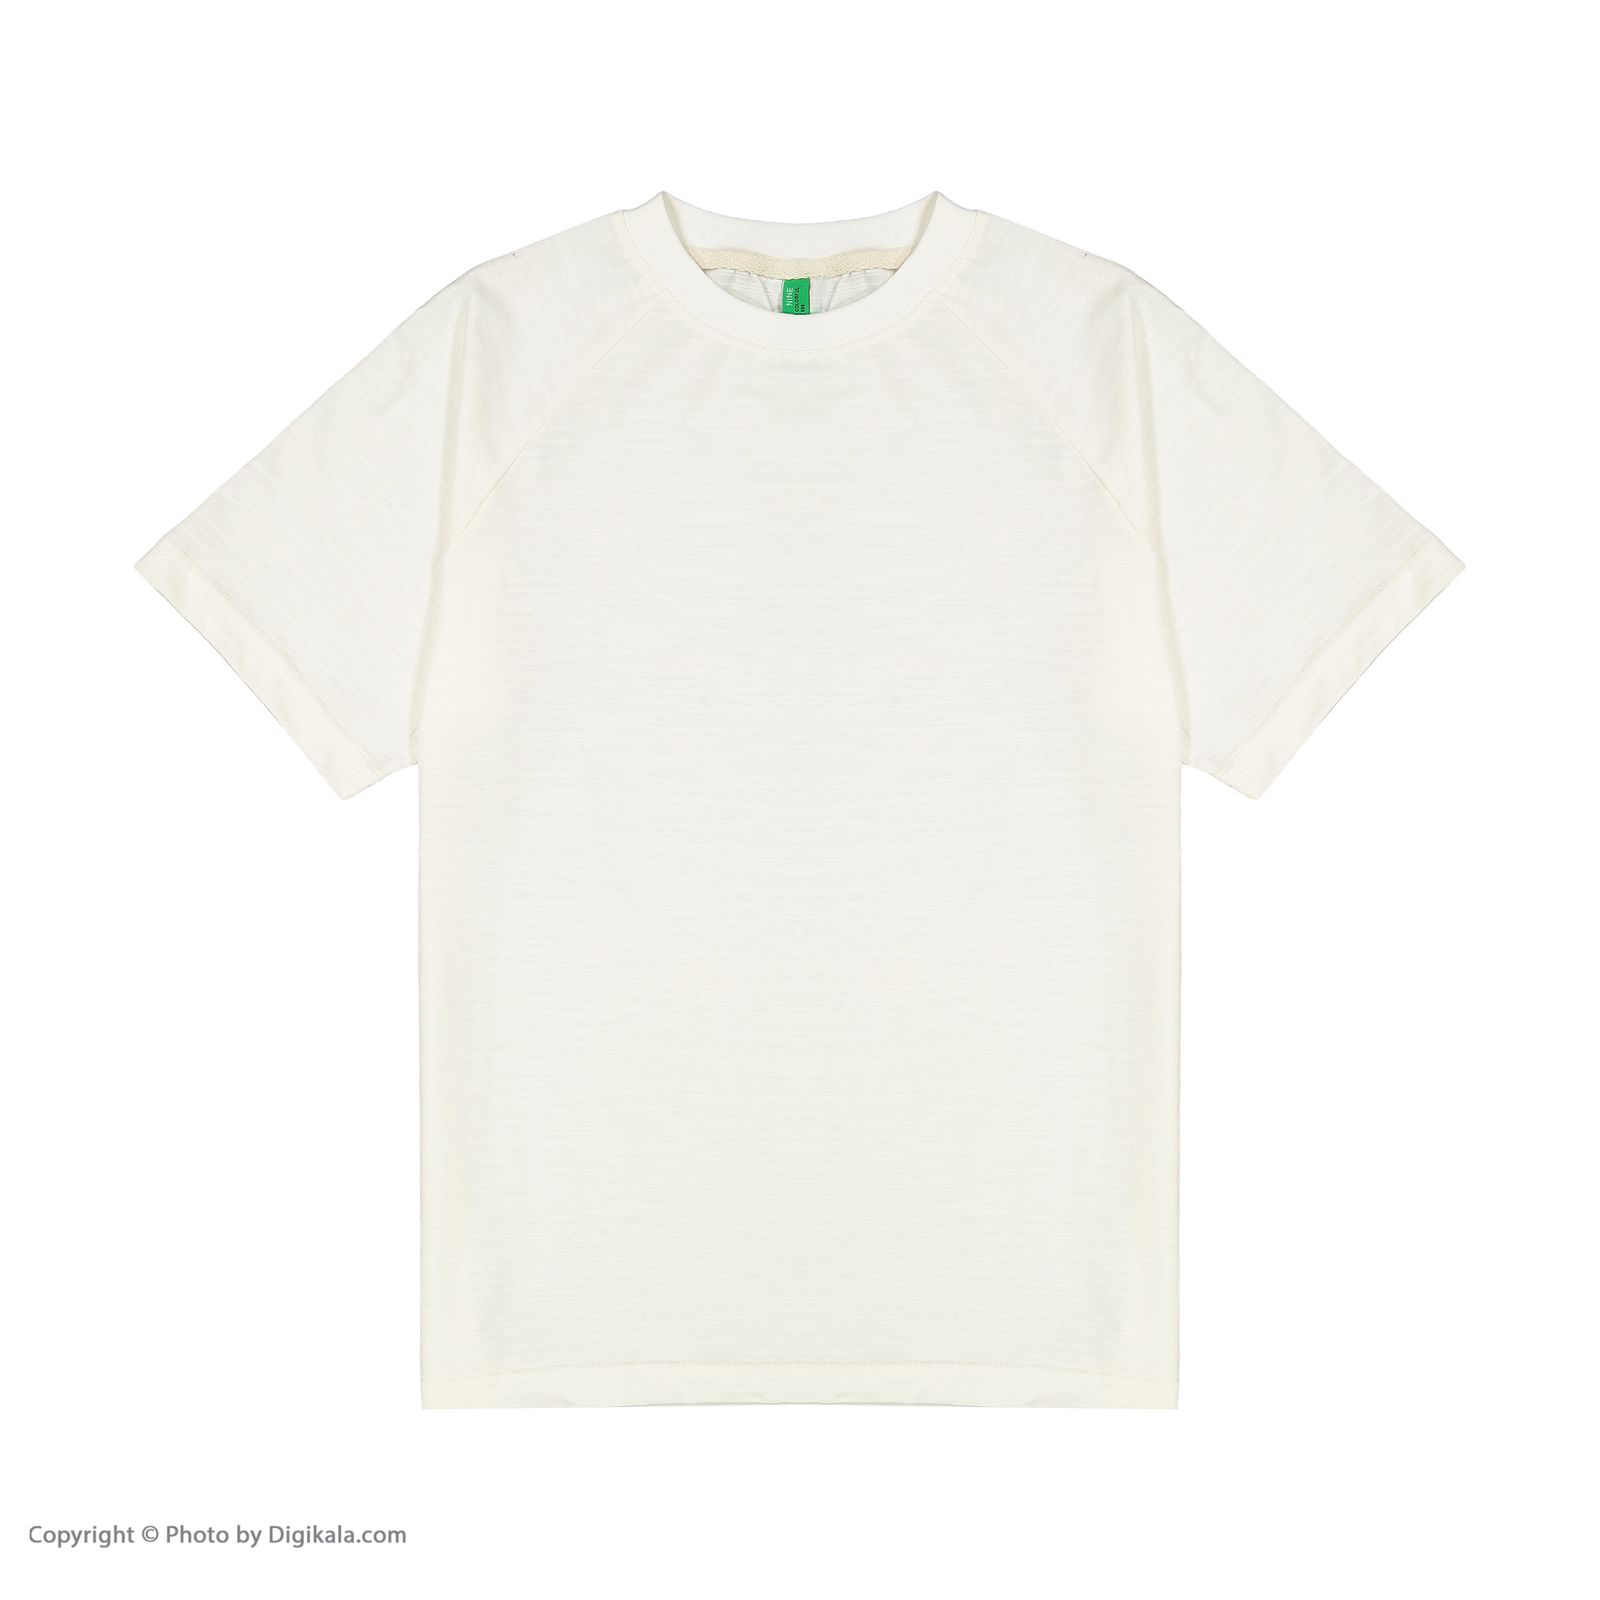 تی شرت بچگانه سیکس زیرو ناین مدل 1101-01 -  - 2